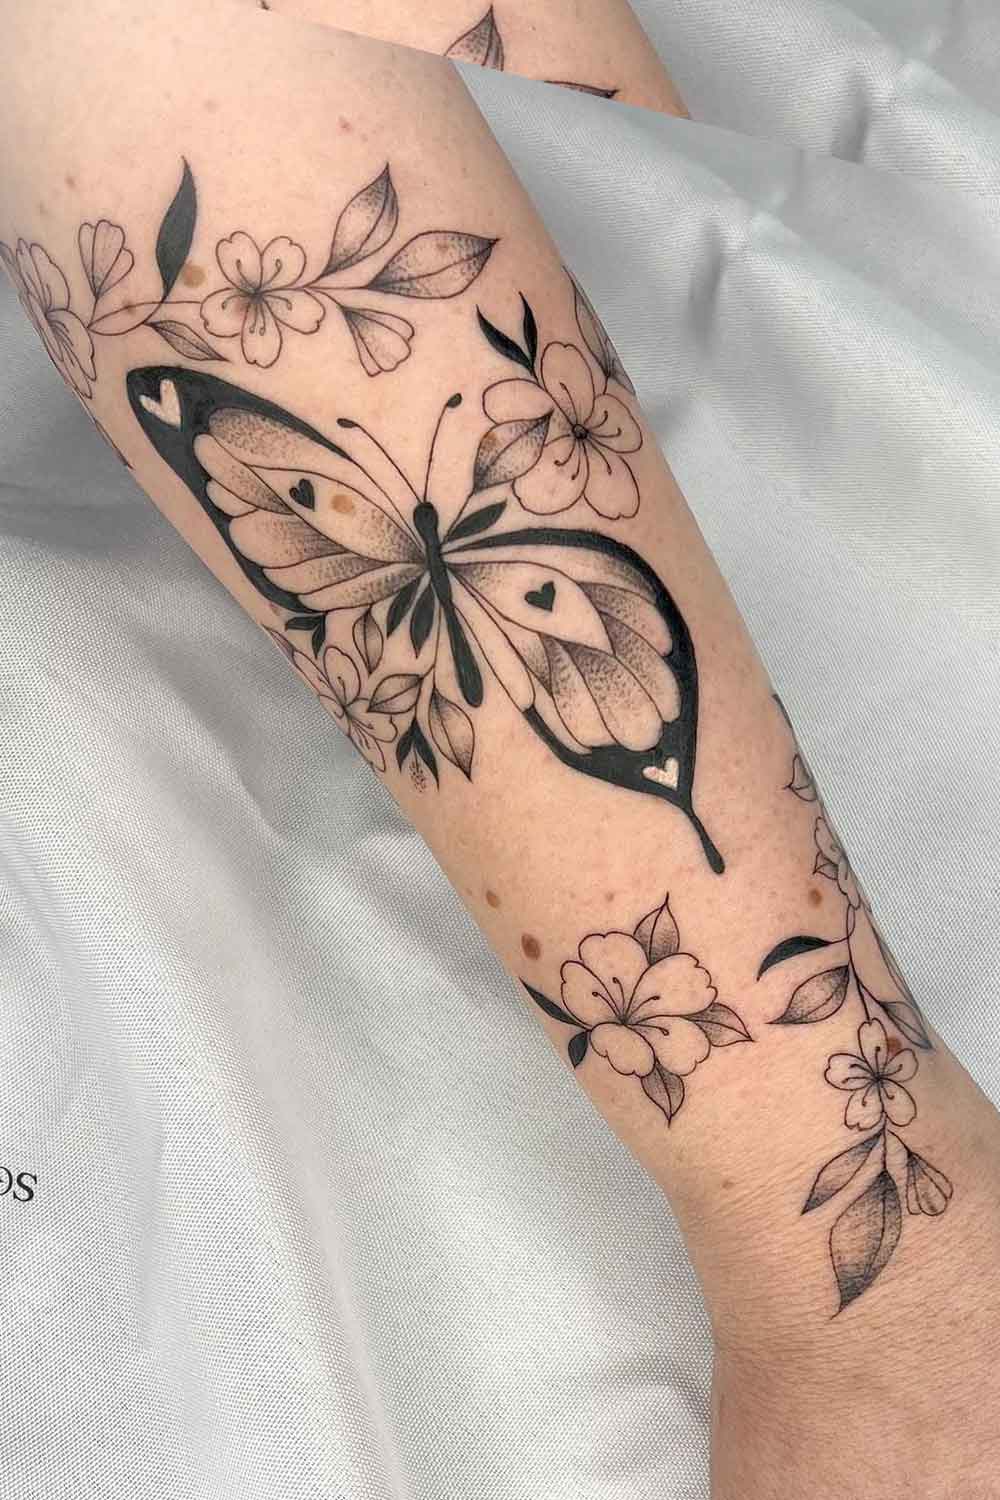 tatuagem-de-borboleta-com-flores-no-braco 